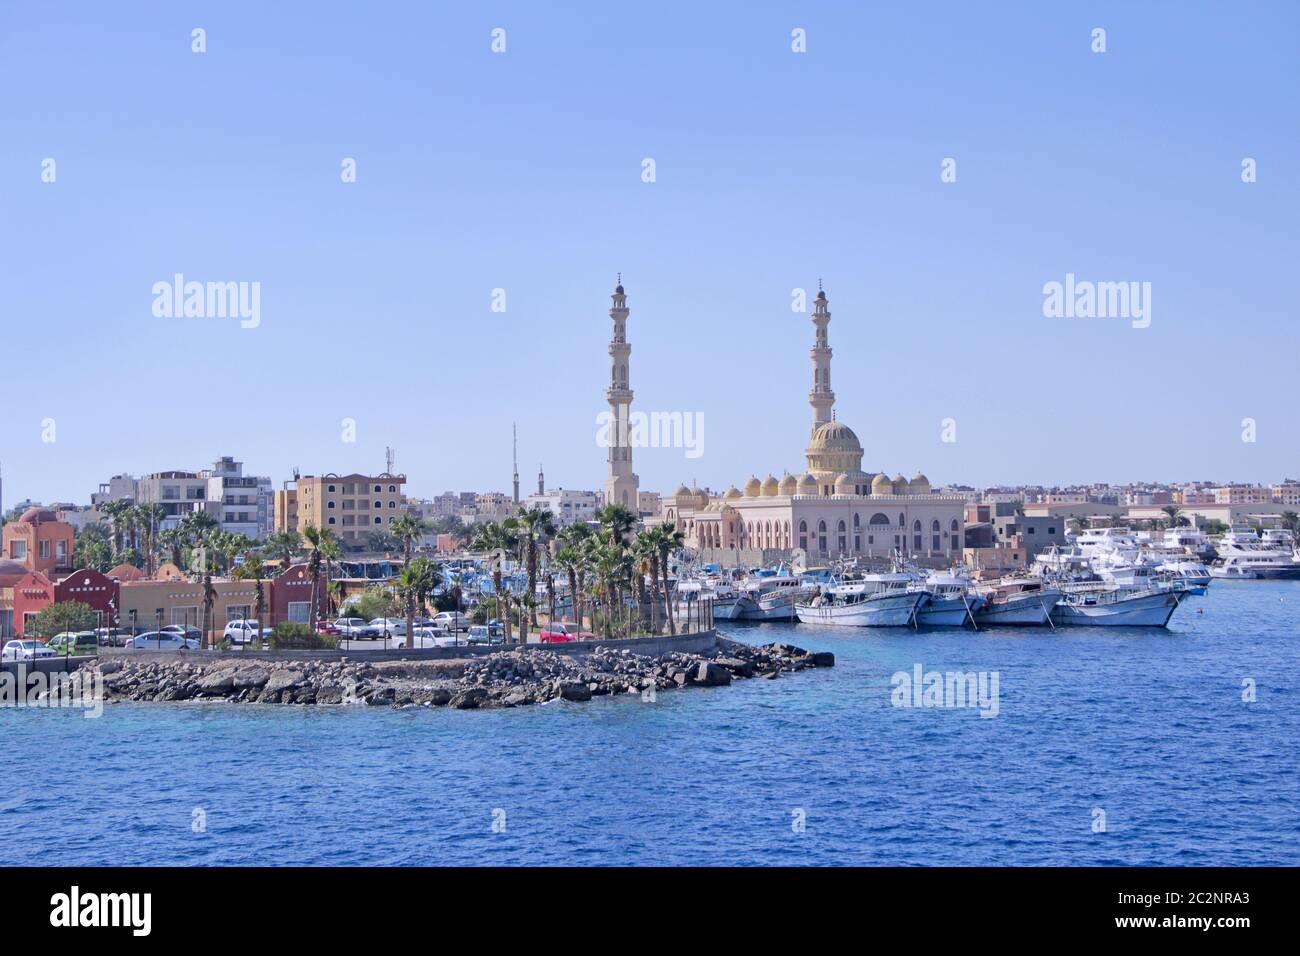 Blick auf den Damm von Hurghada mit festgeschobenen Yachten, Schiffen und einer schönen Moschee. Moderne ägyptische Stadt Stockfoto